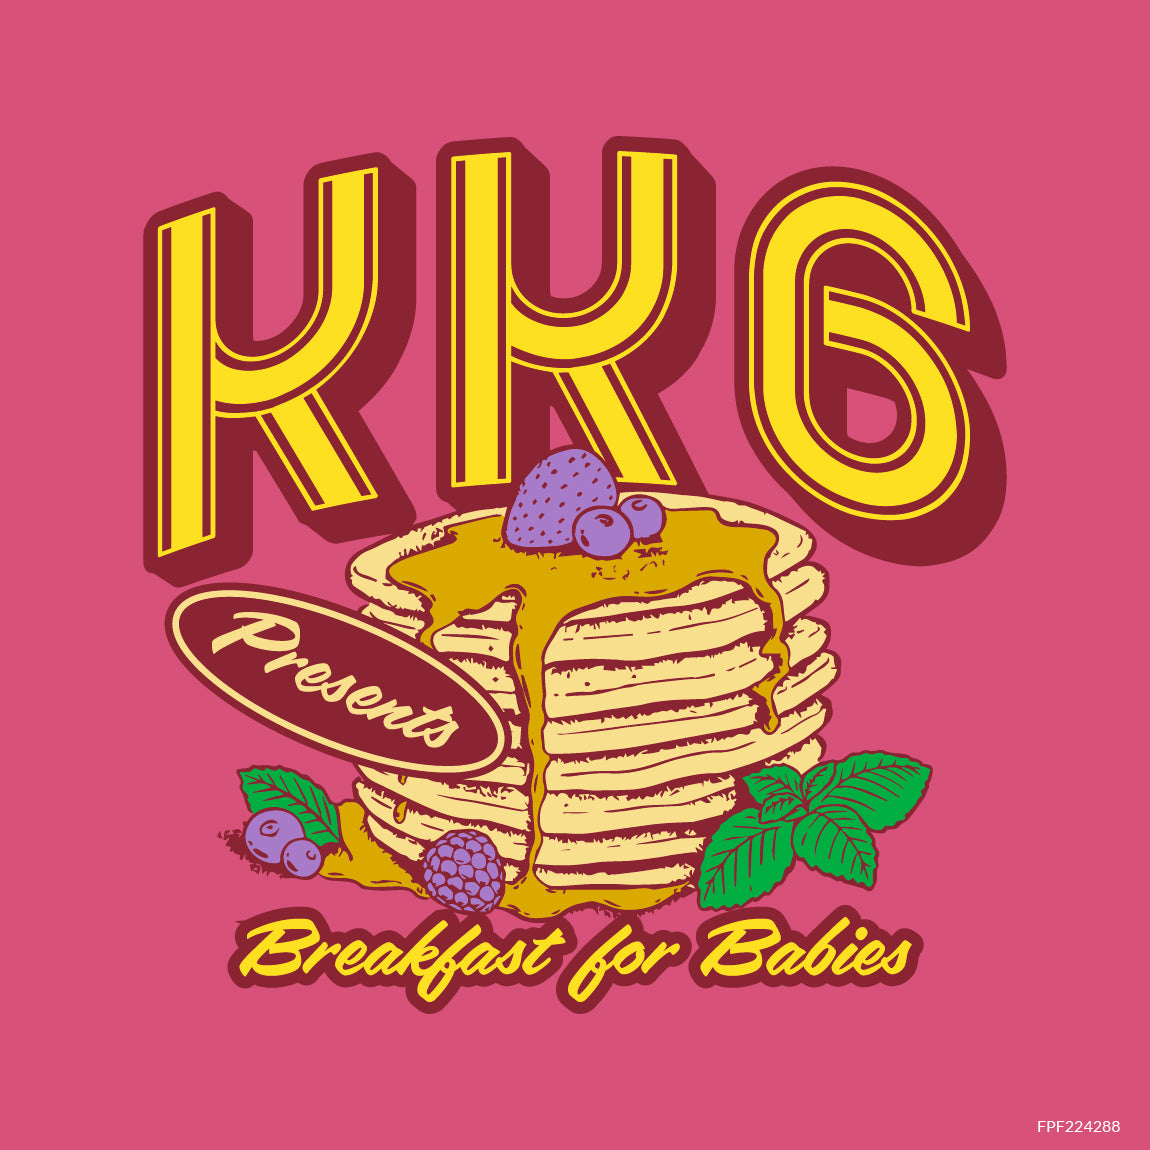 KKG Pancakes